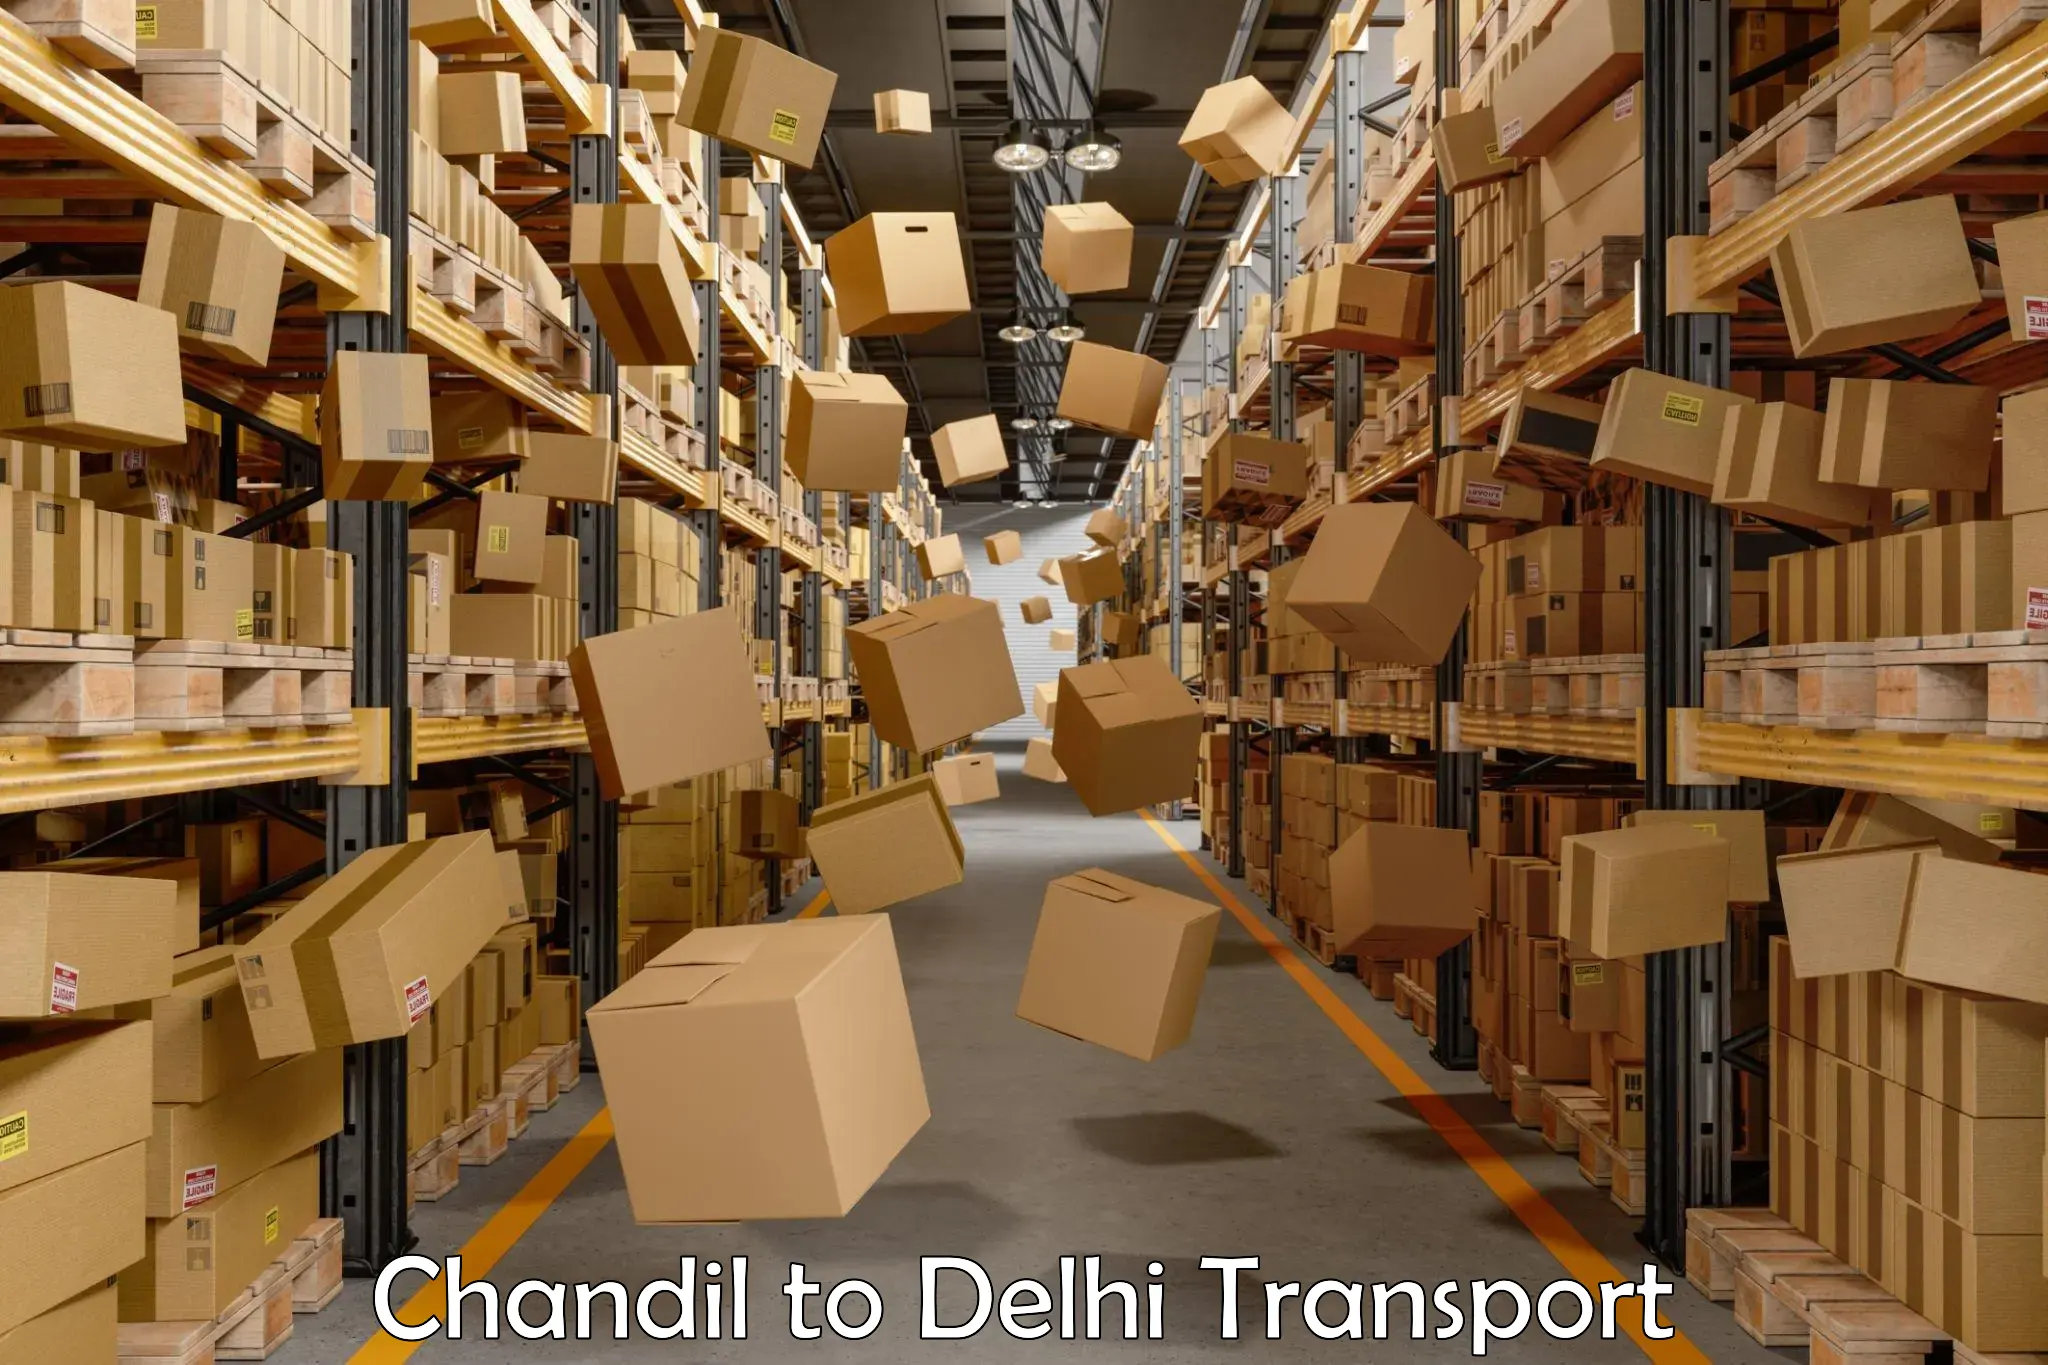 Vehicle parcel service Chandil to East Delhi